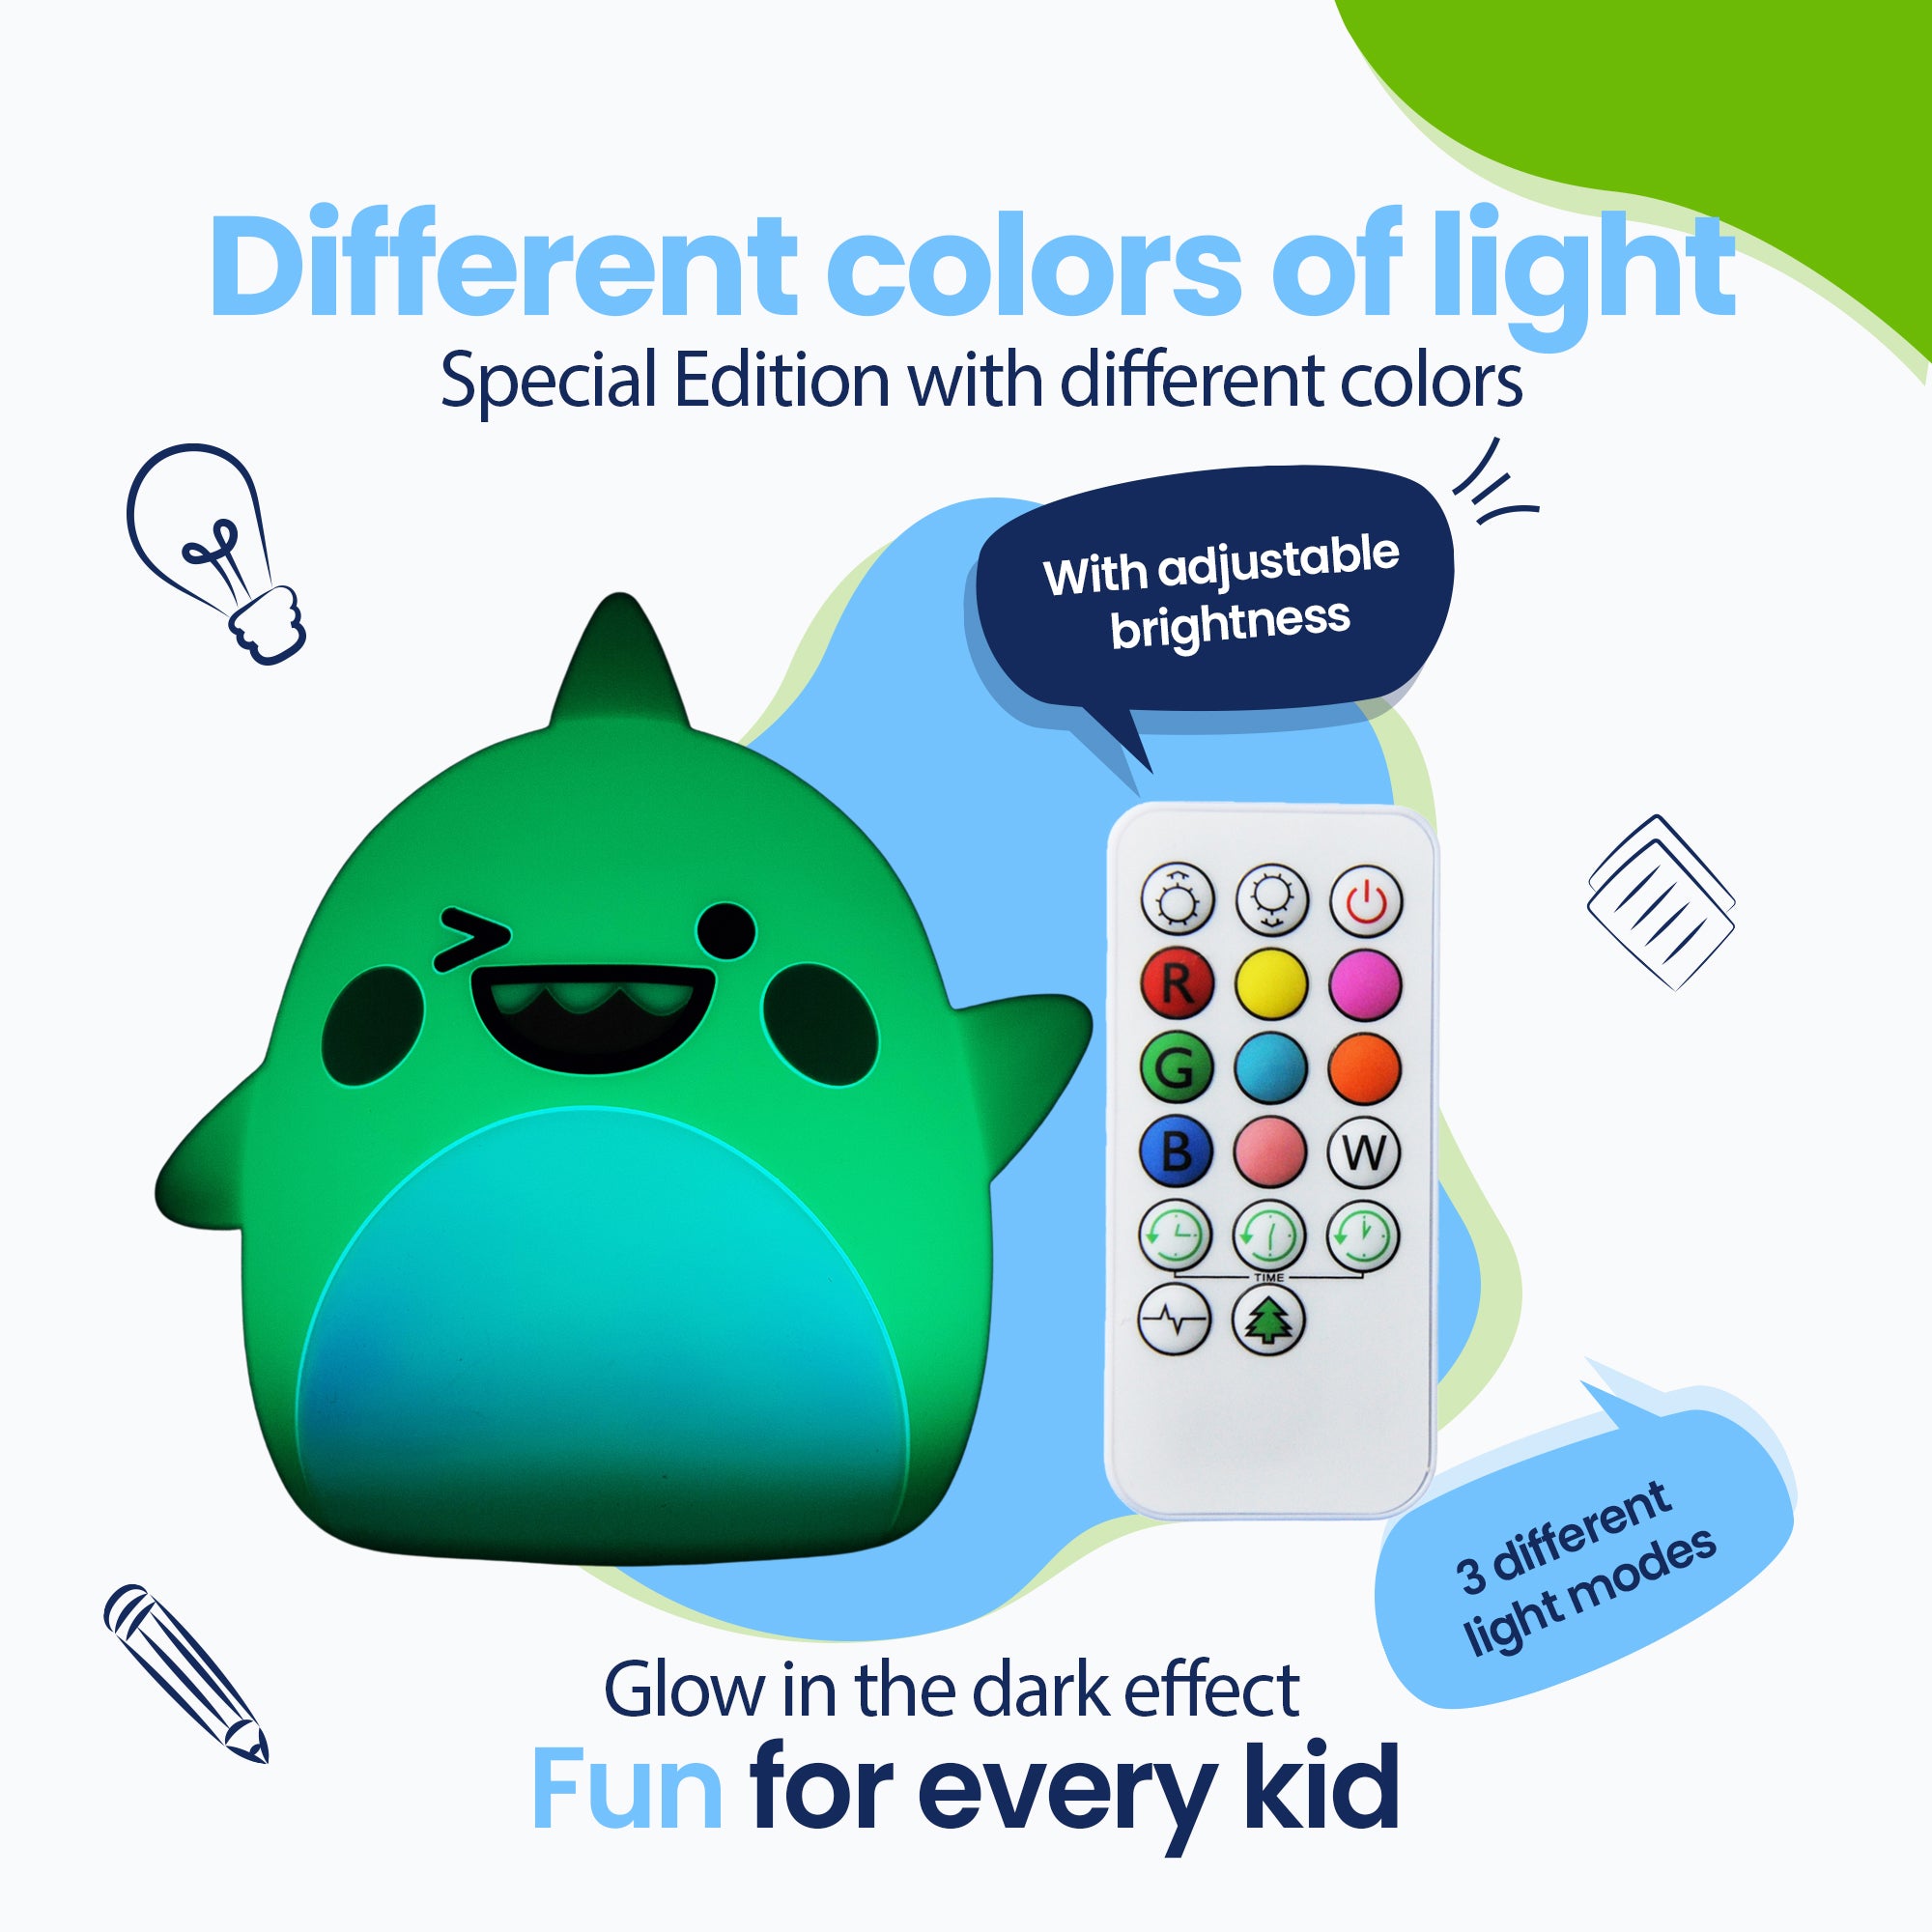 Różne kolory światła - Edycja specjalna w różnych kolorach - Efekt świecenia w ciemności - 3 różne jasne plaże - Zabawa dla każdego dziecka